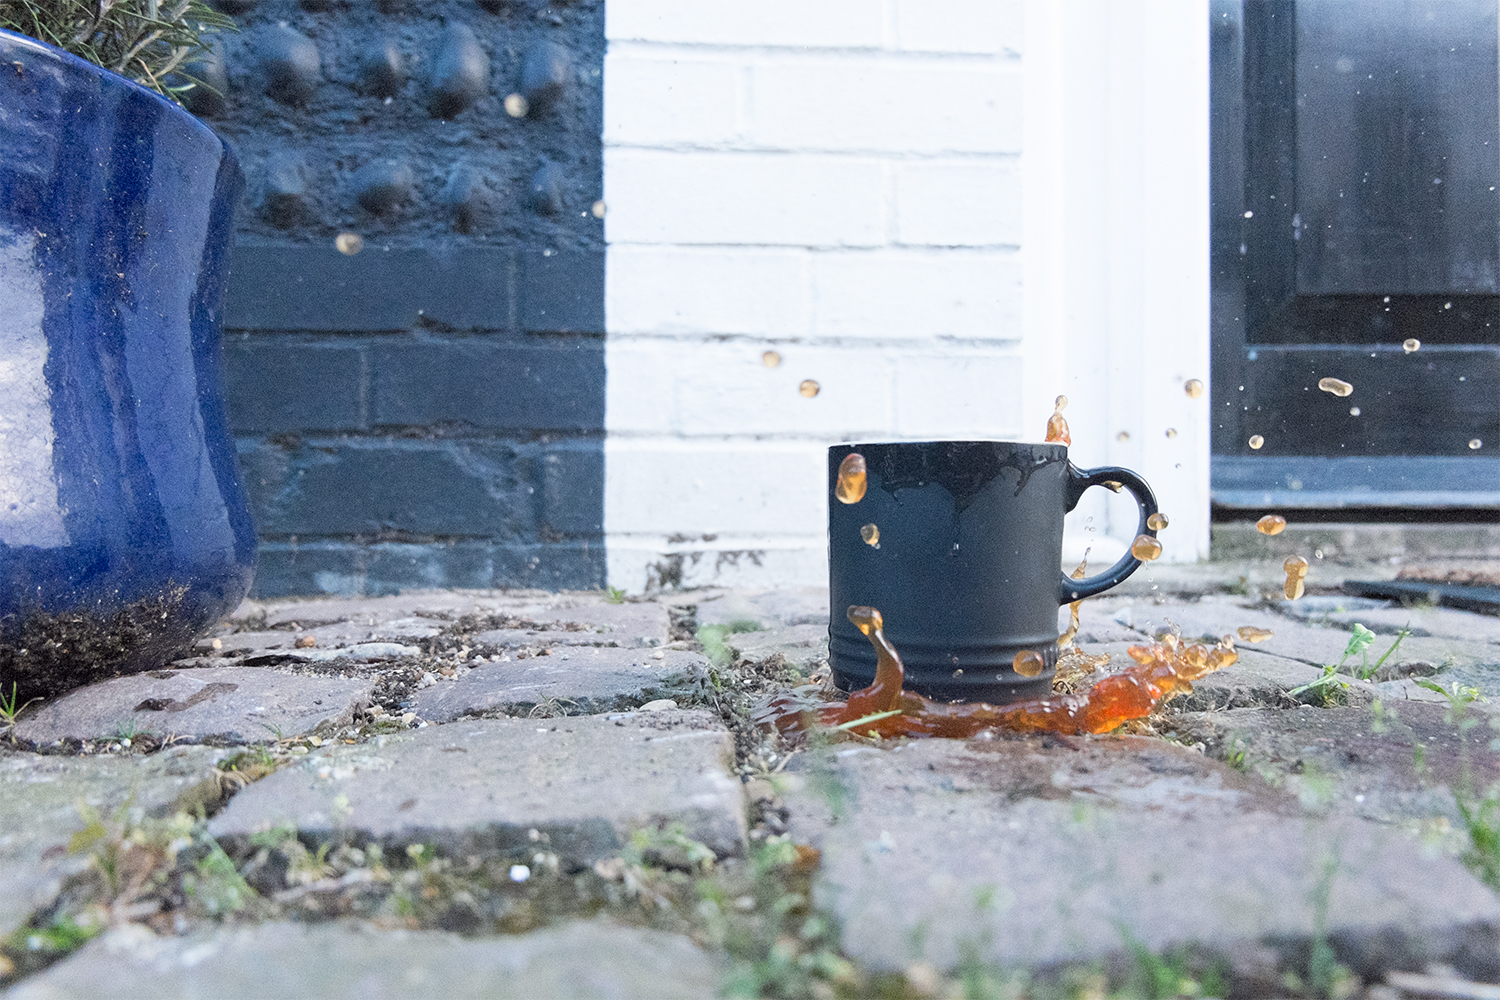 Tea splashing out of a mug, outdoors on a patio